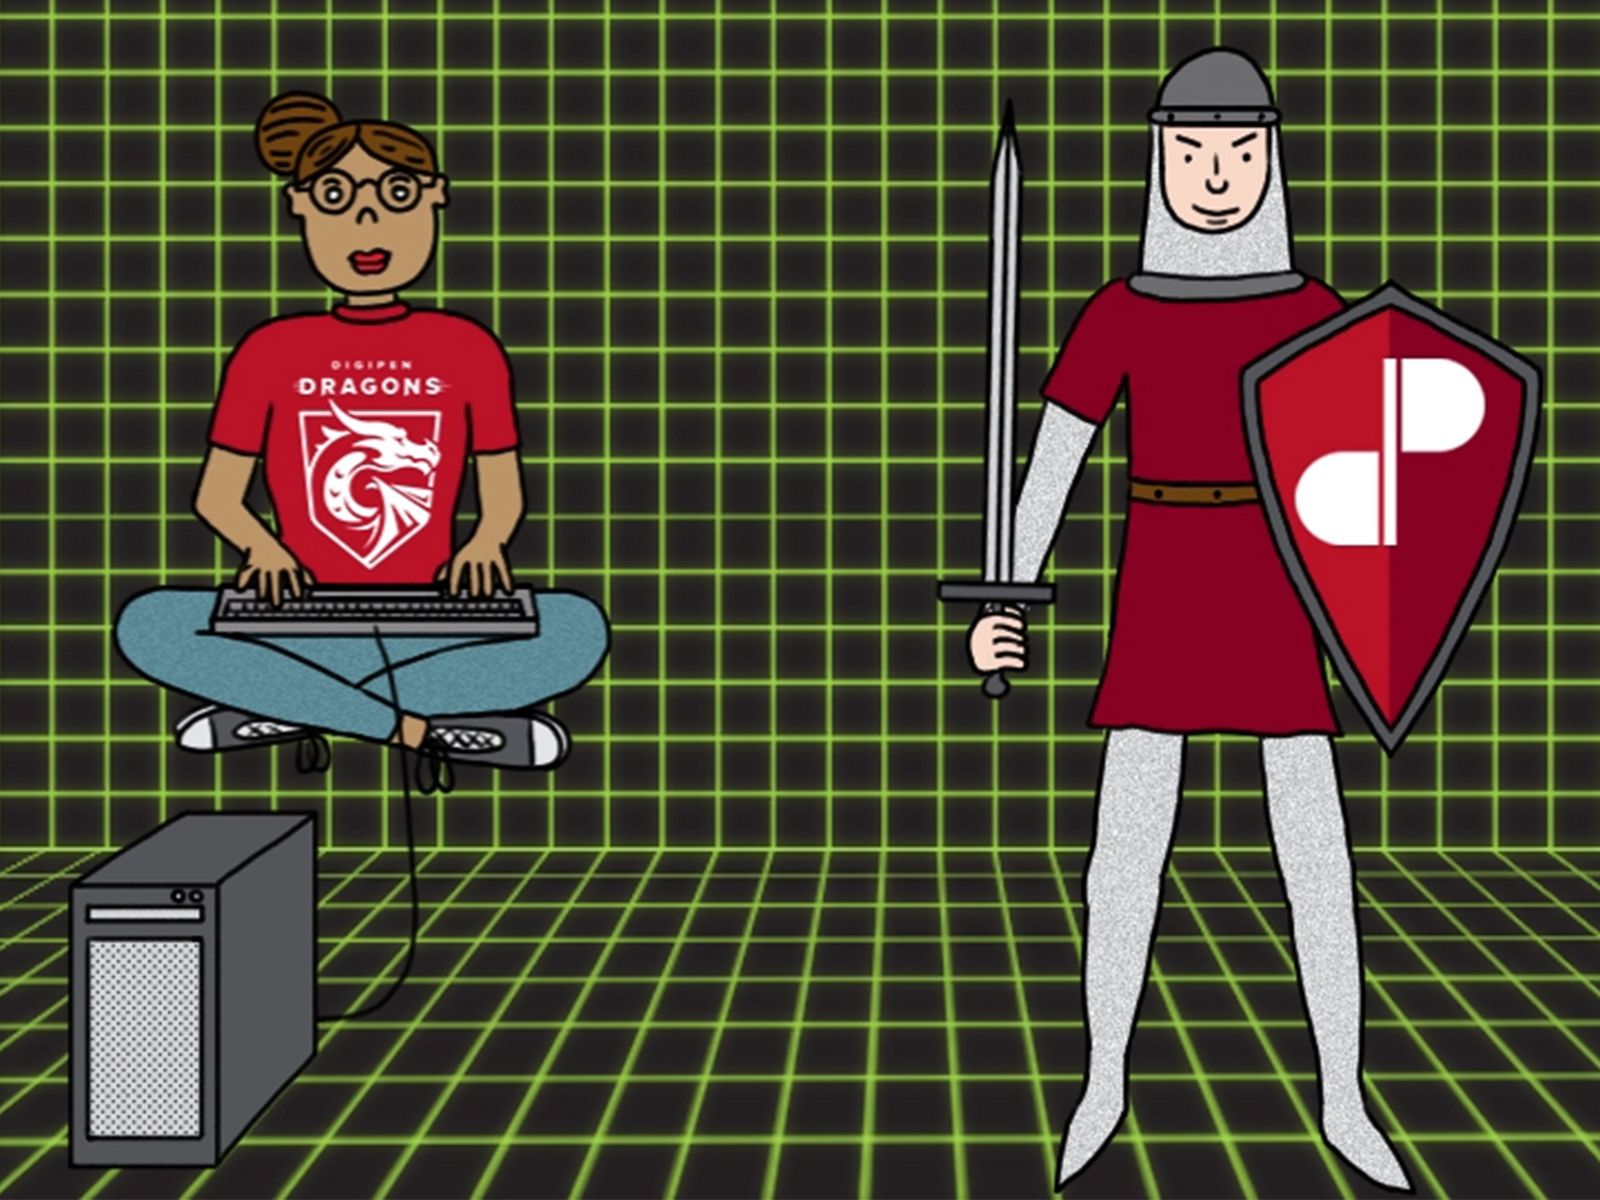 Un estudiante de DigiPen levita y programa en un ciberespacio verde junto a un caballero con un escudo de DigiPen.